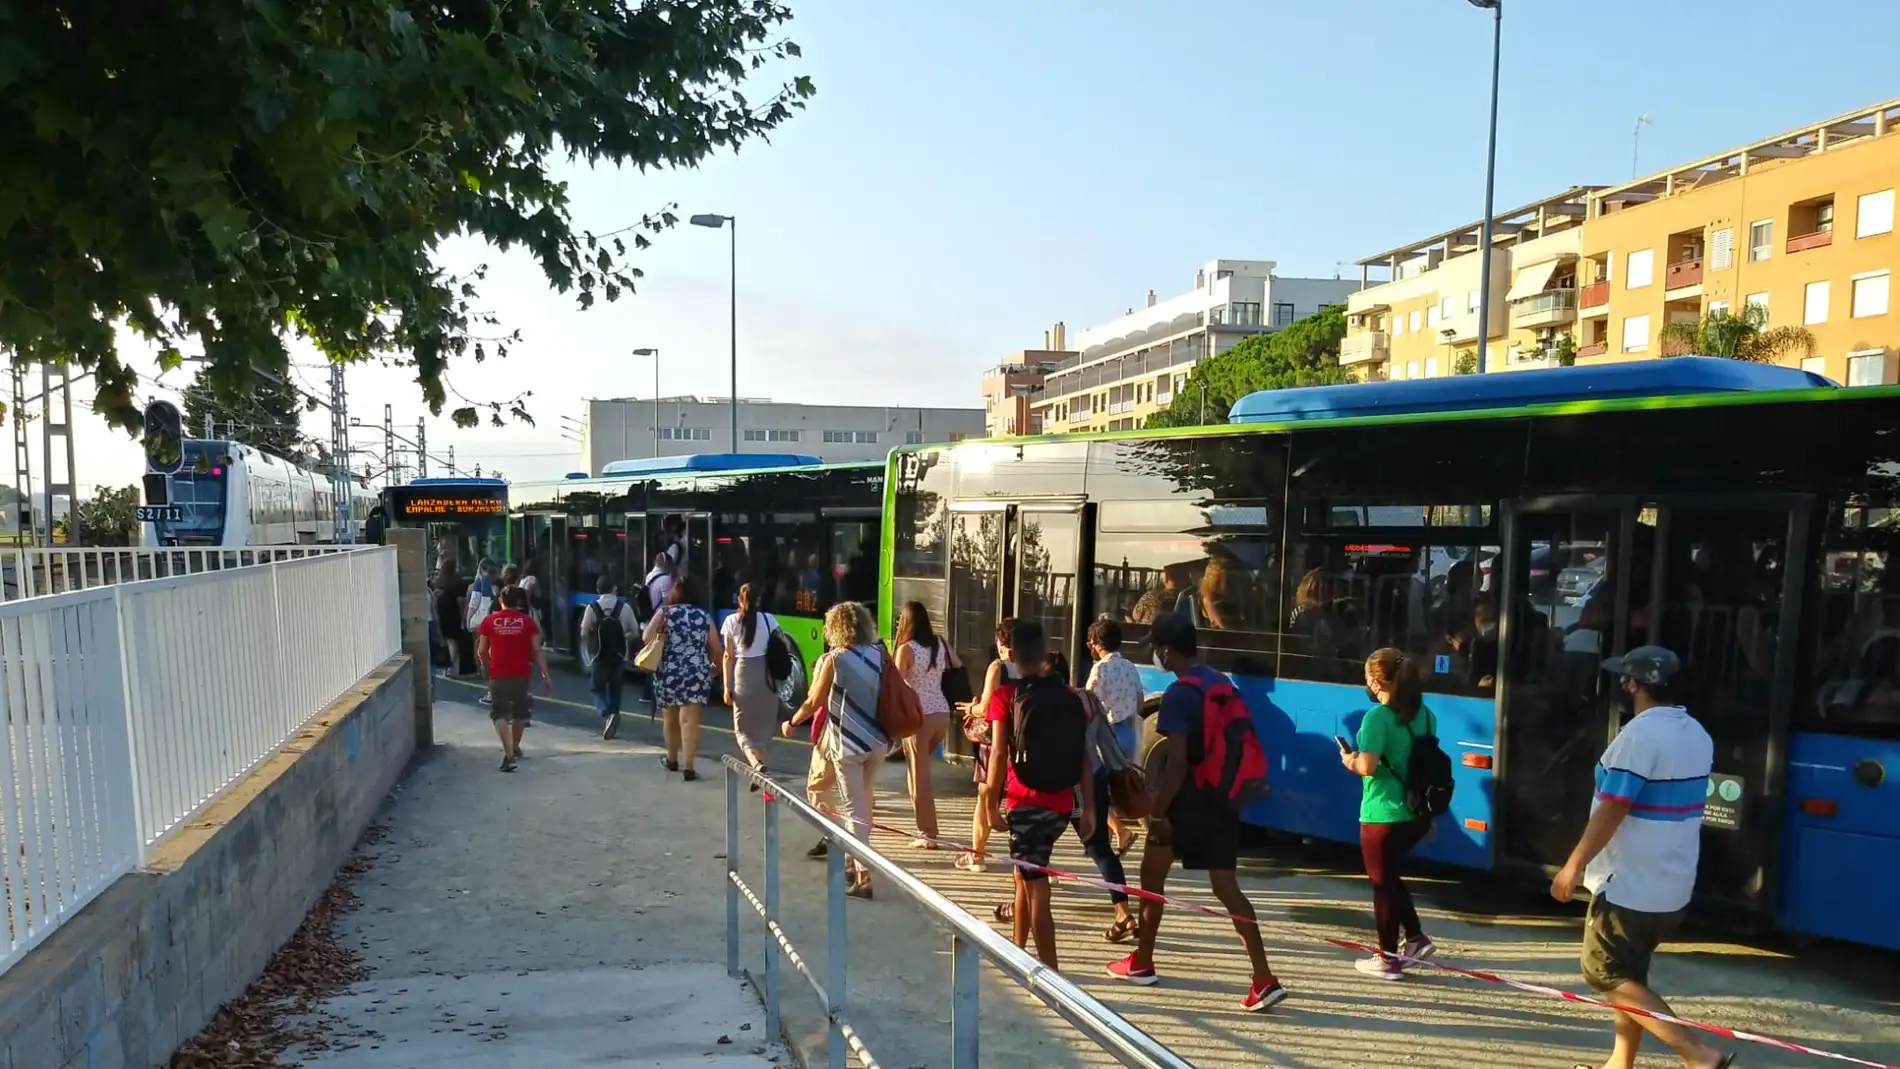 Servicio de bus alternativo ante los cortes en las líneas de MetroValencia